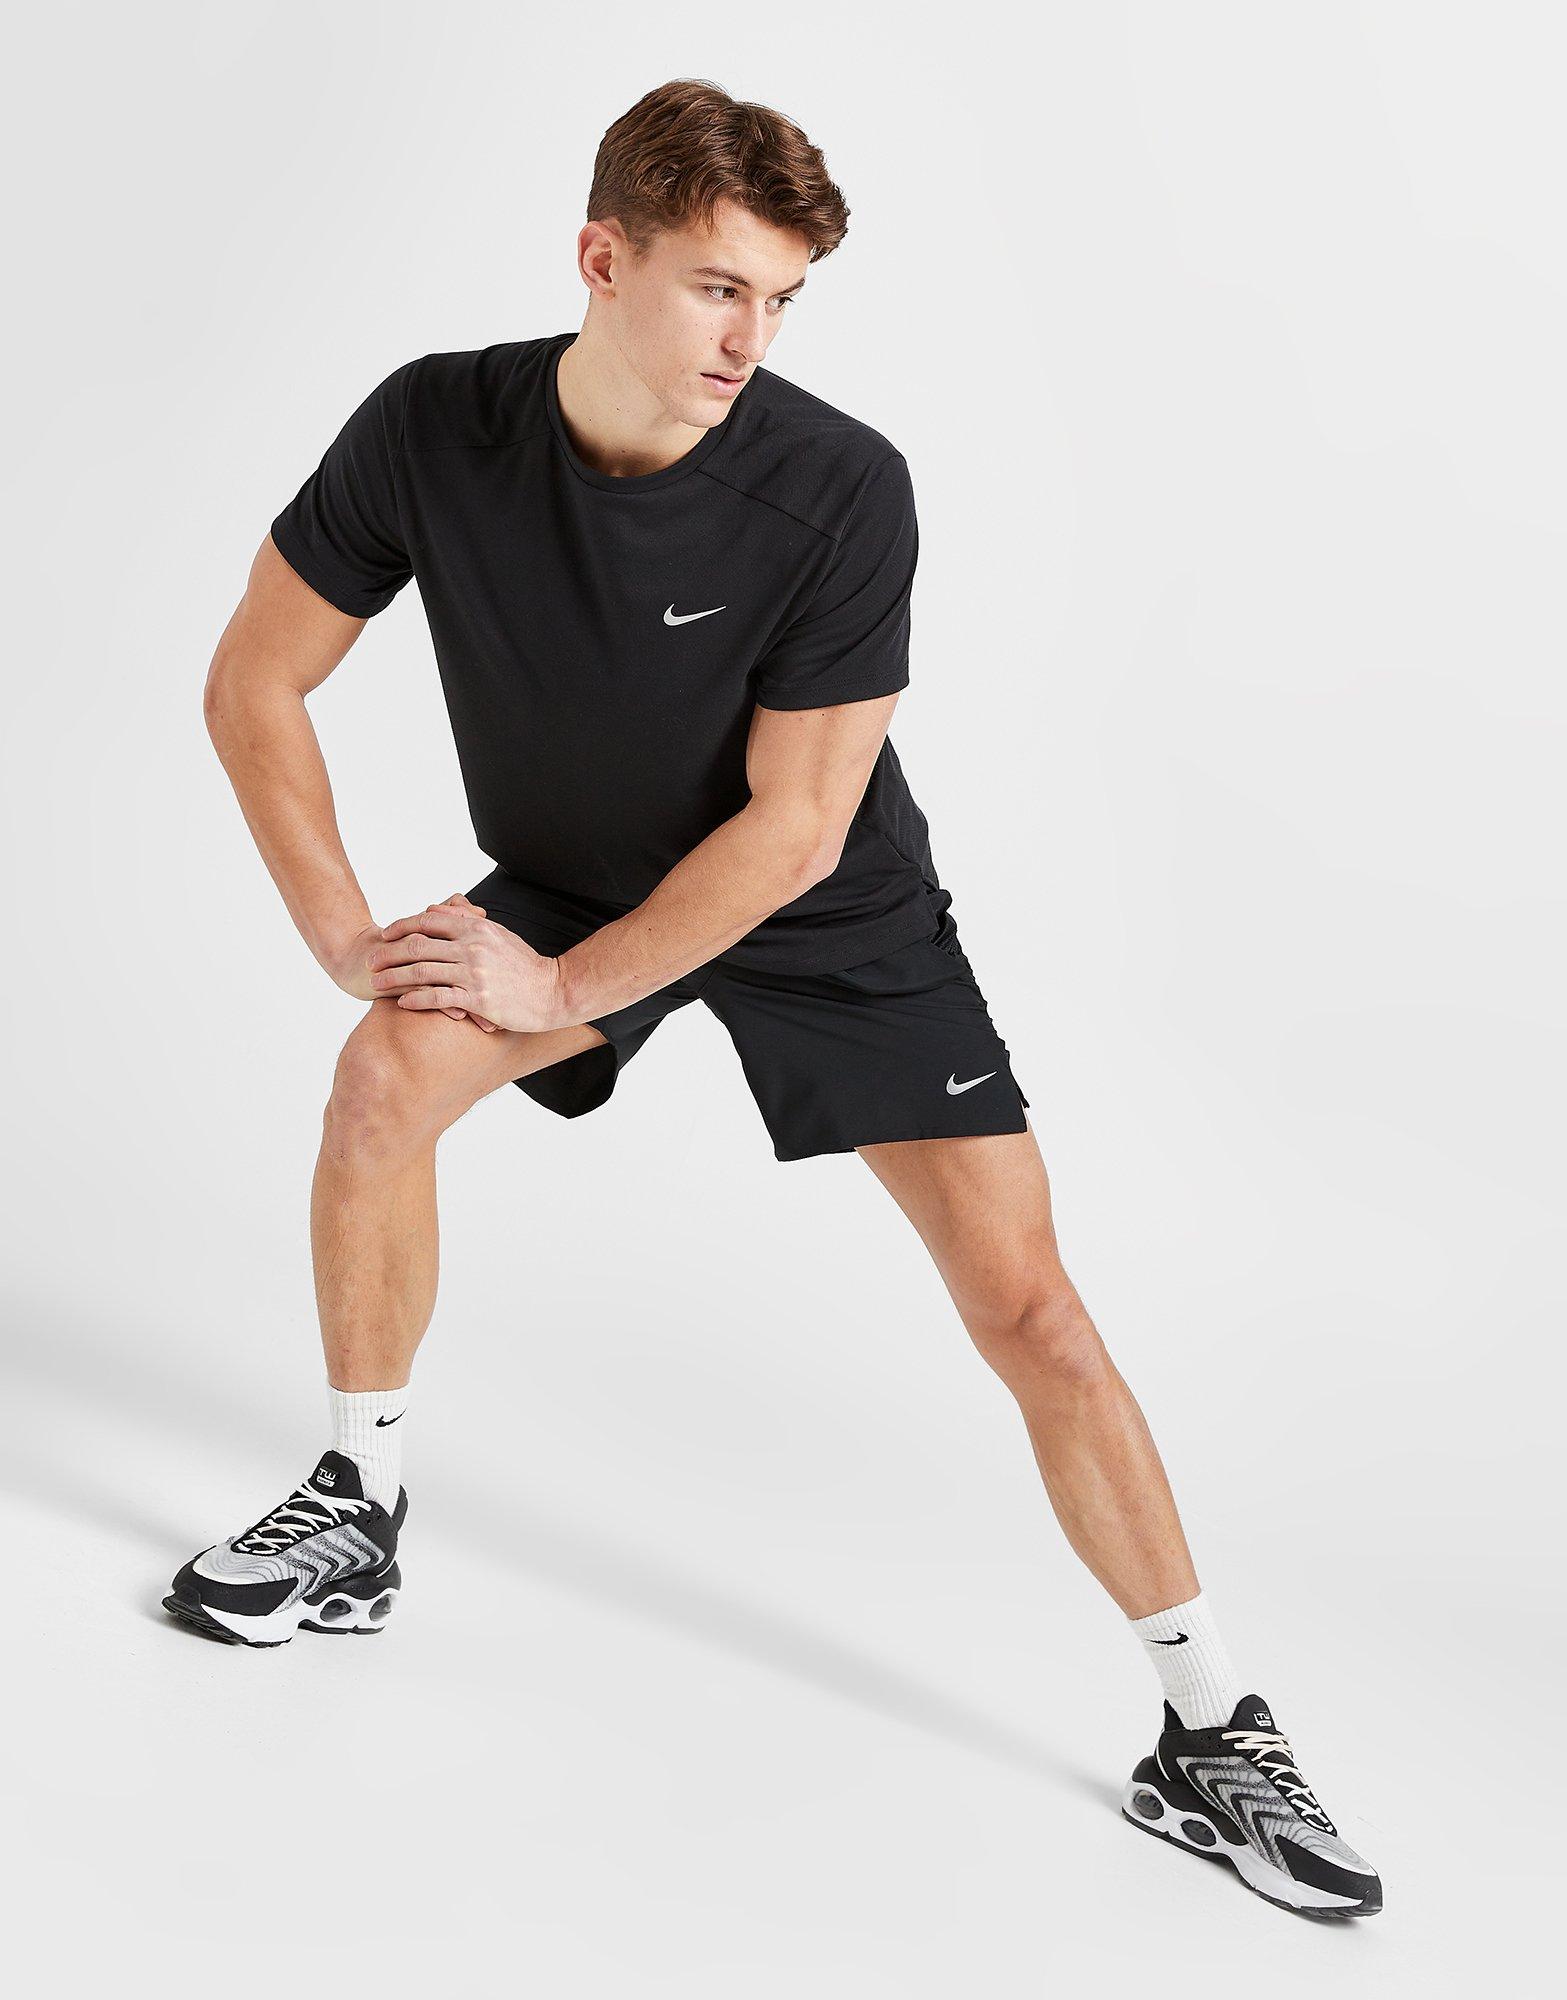 SHORT TIGHTS Running shorts - Men - Diadora Online Store JP